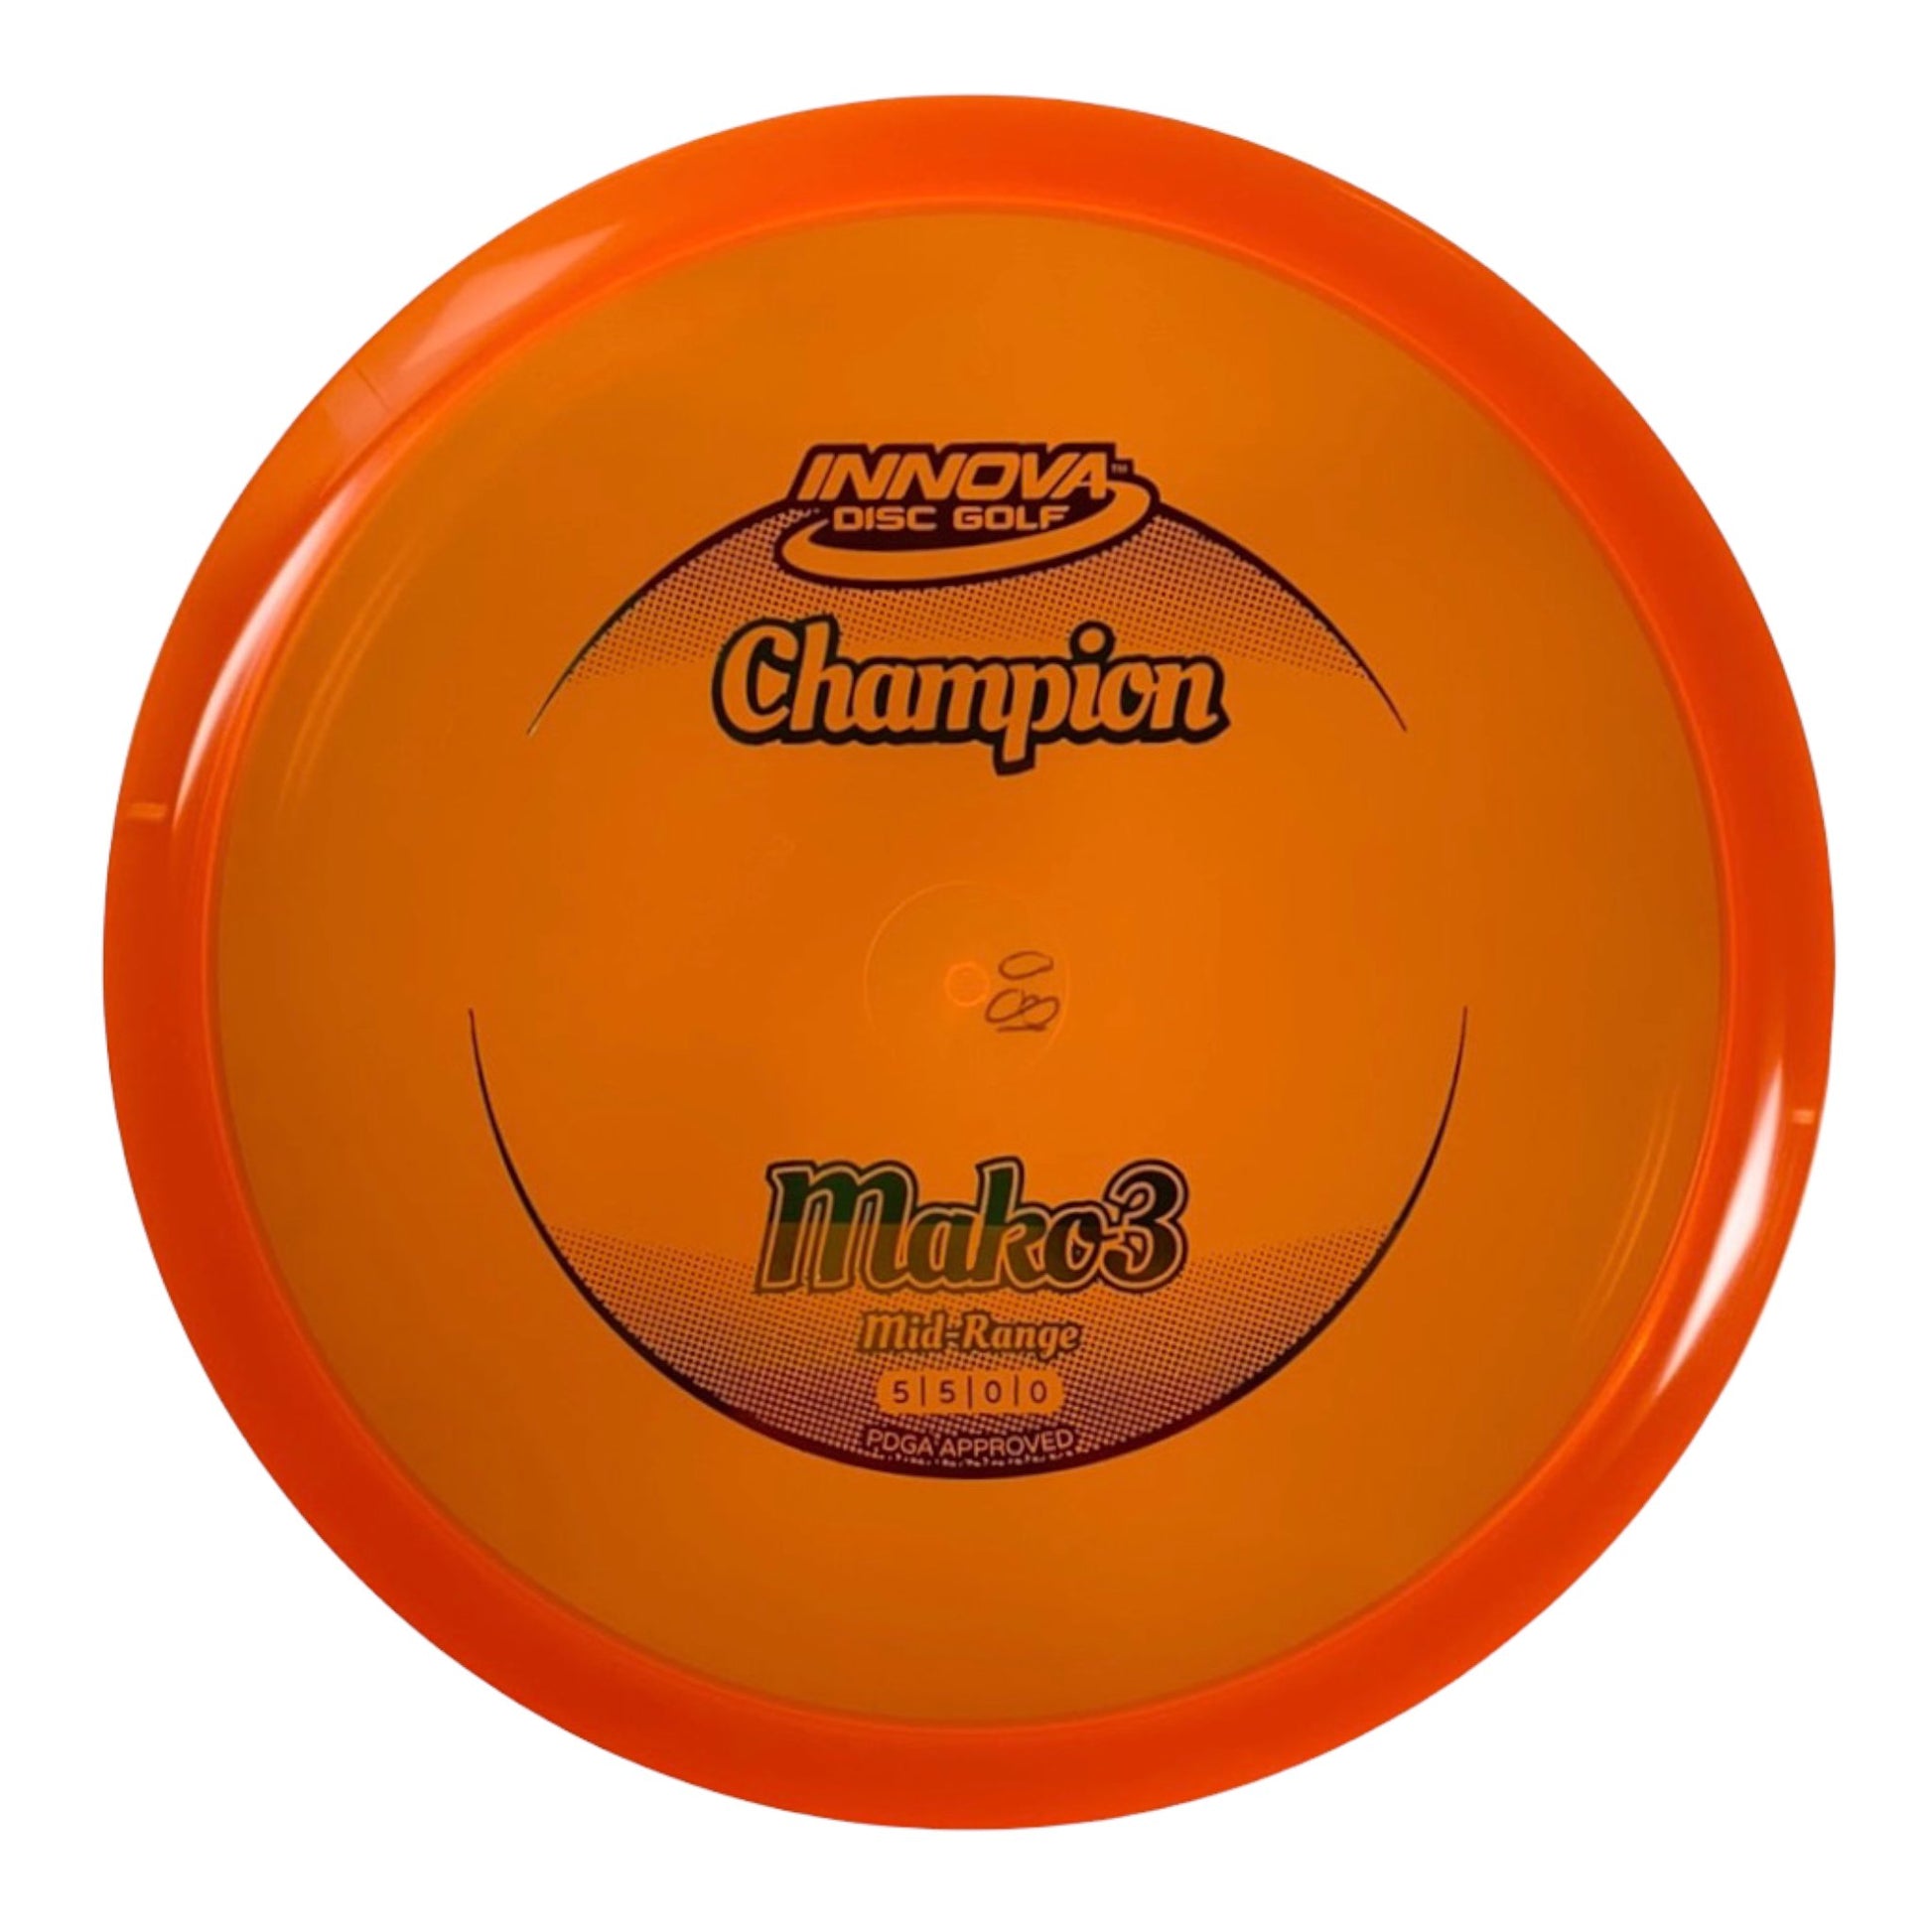 Innova Champion Discs Mako3 | Champion | Orange/Rasta 180g Disc Golf